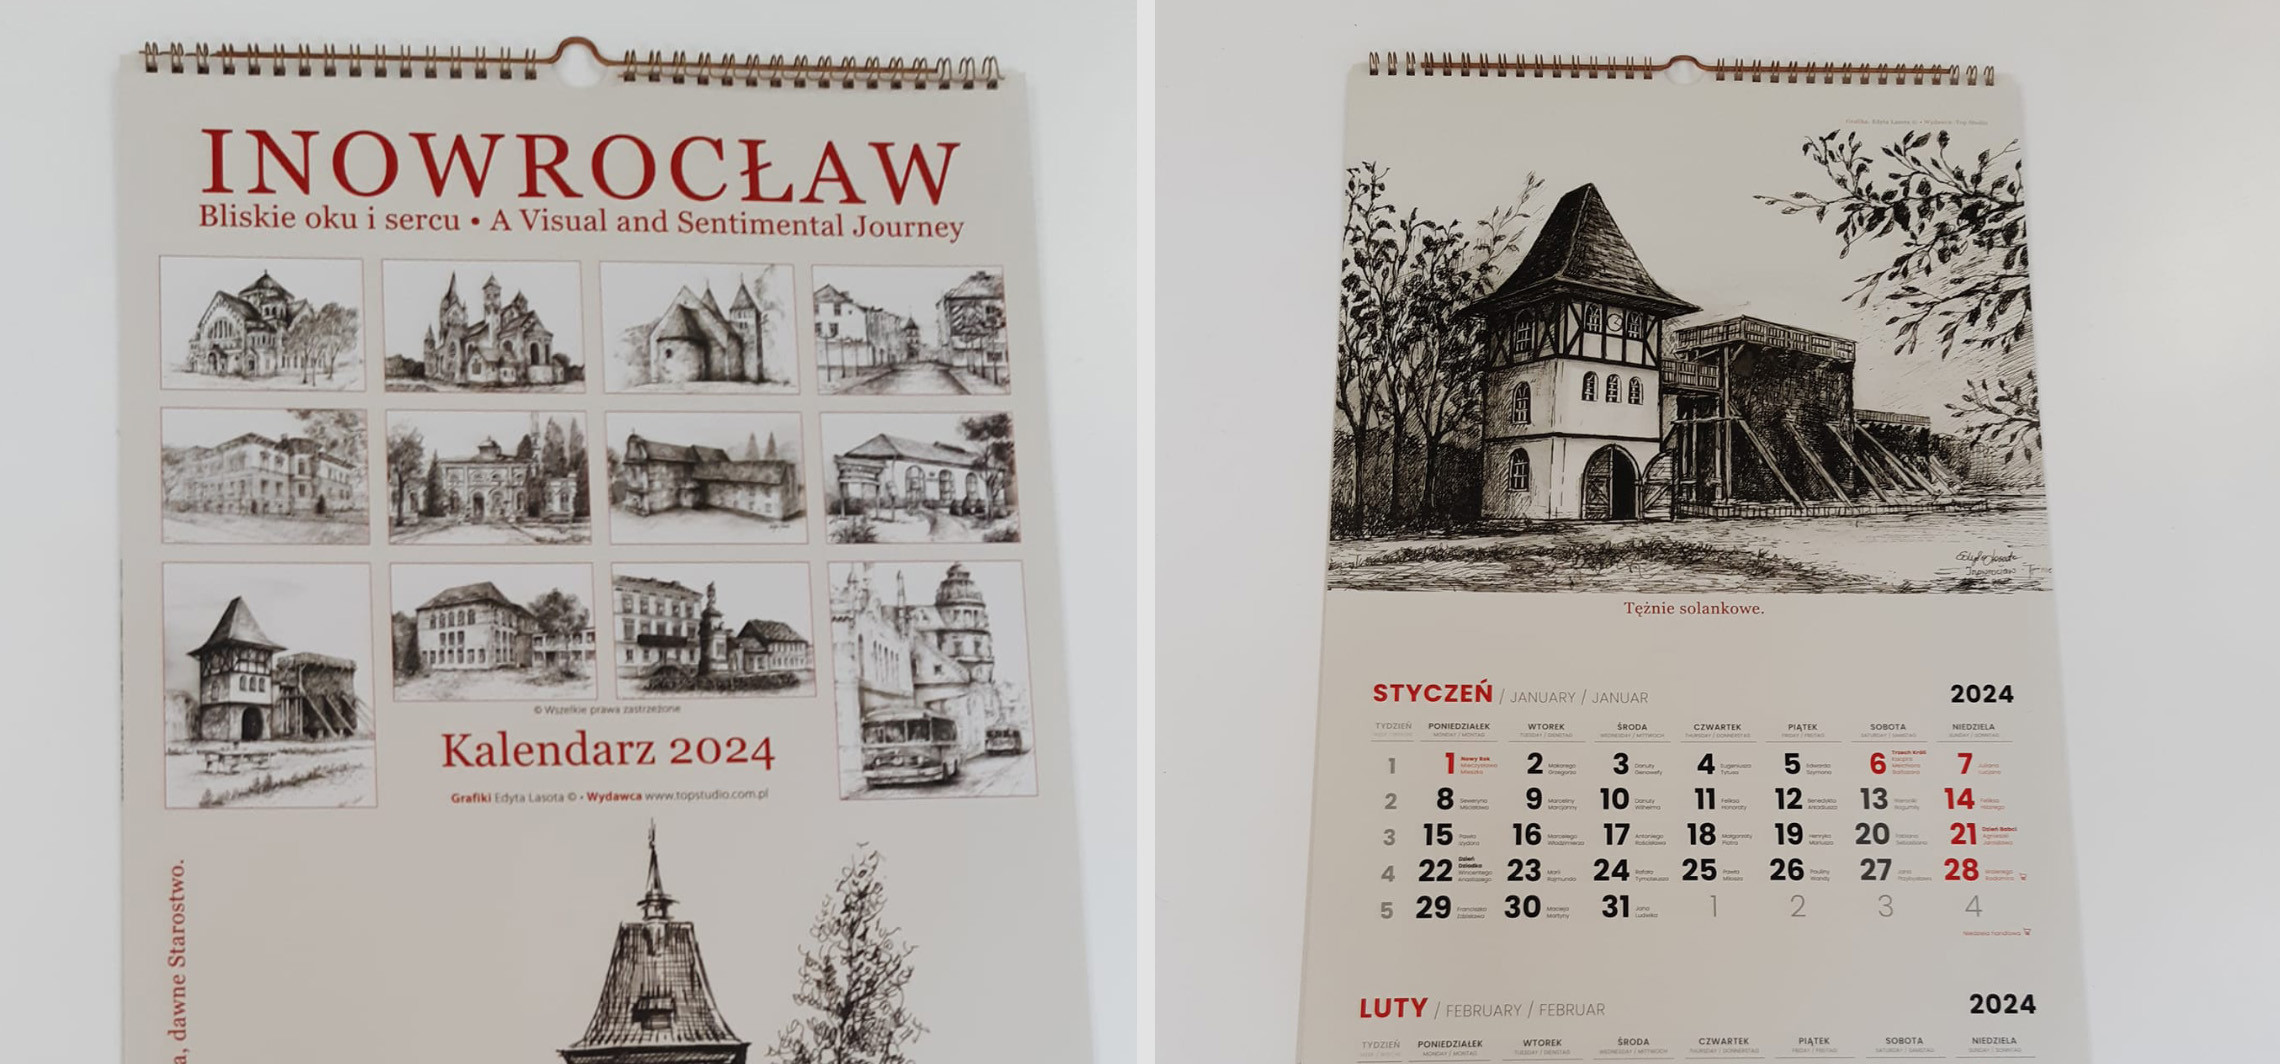 Inowrocław - Kalendarz na rok 2024 z motywem Inowrocławia